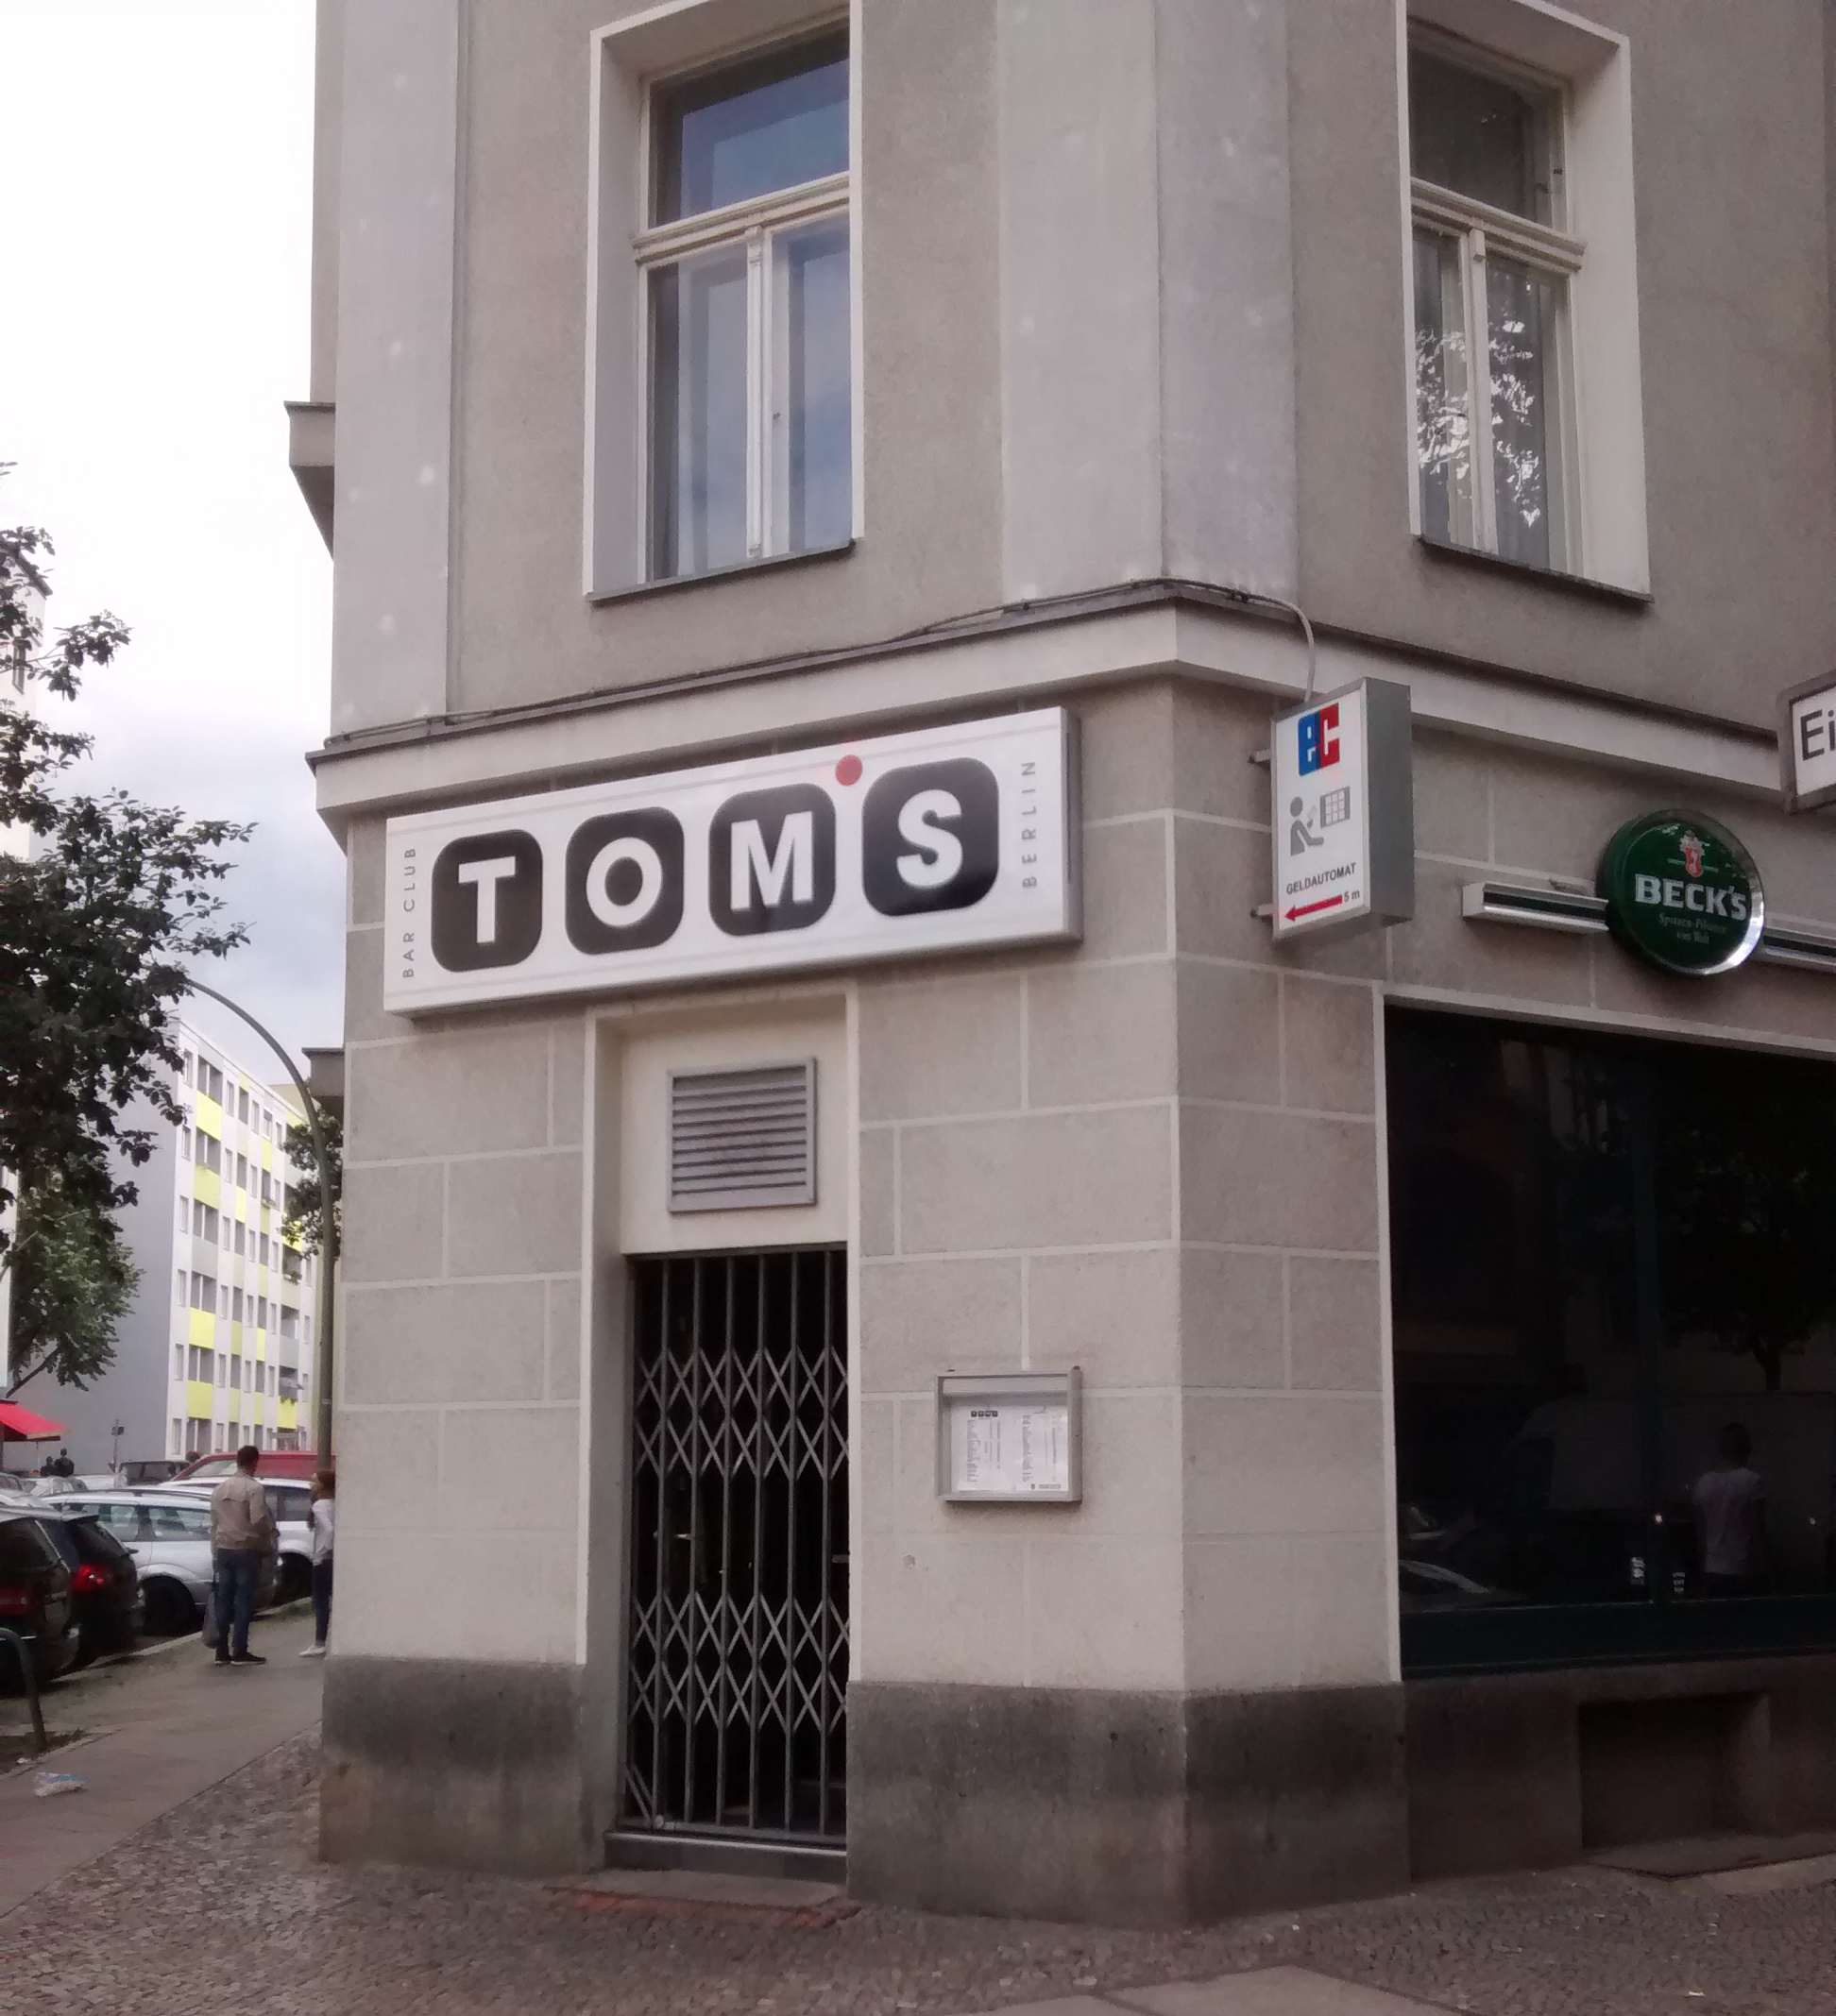 Tom’s Bar